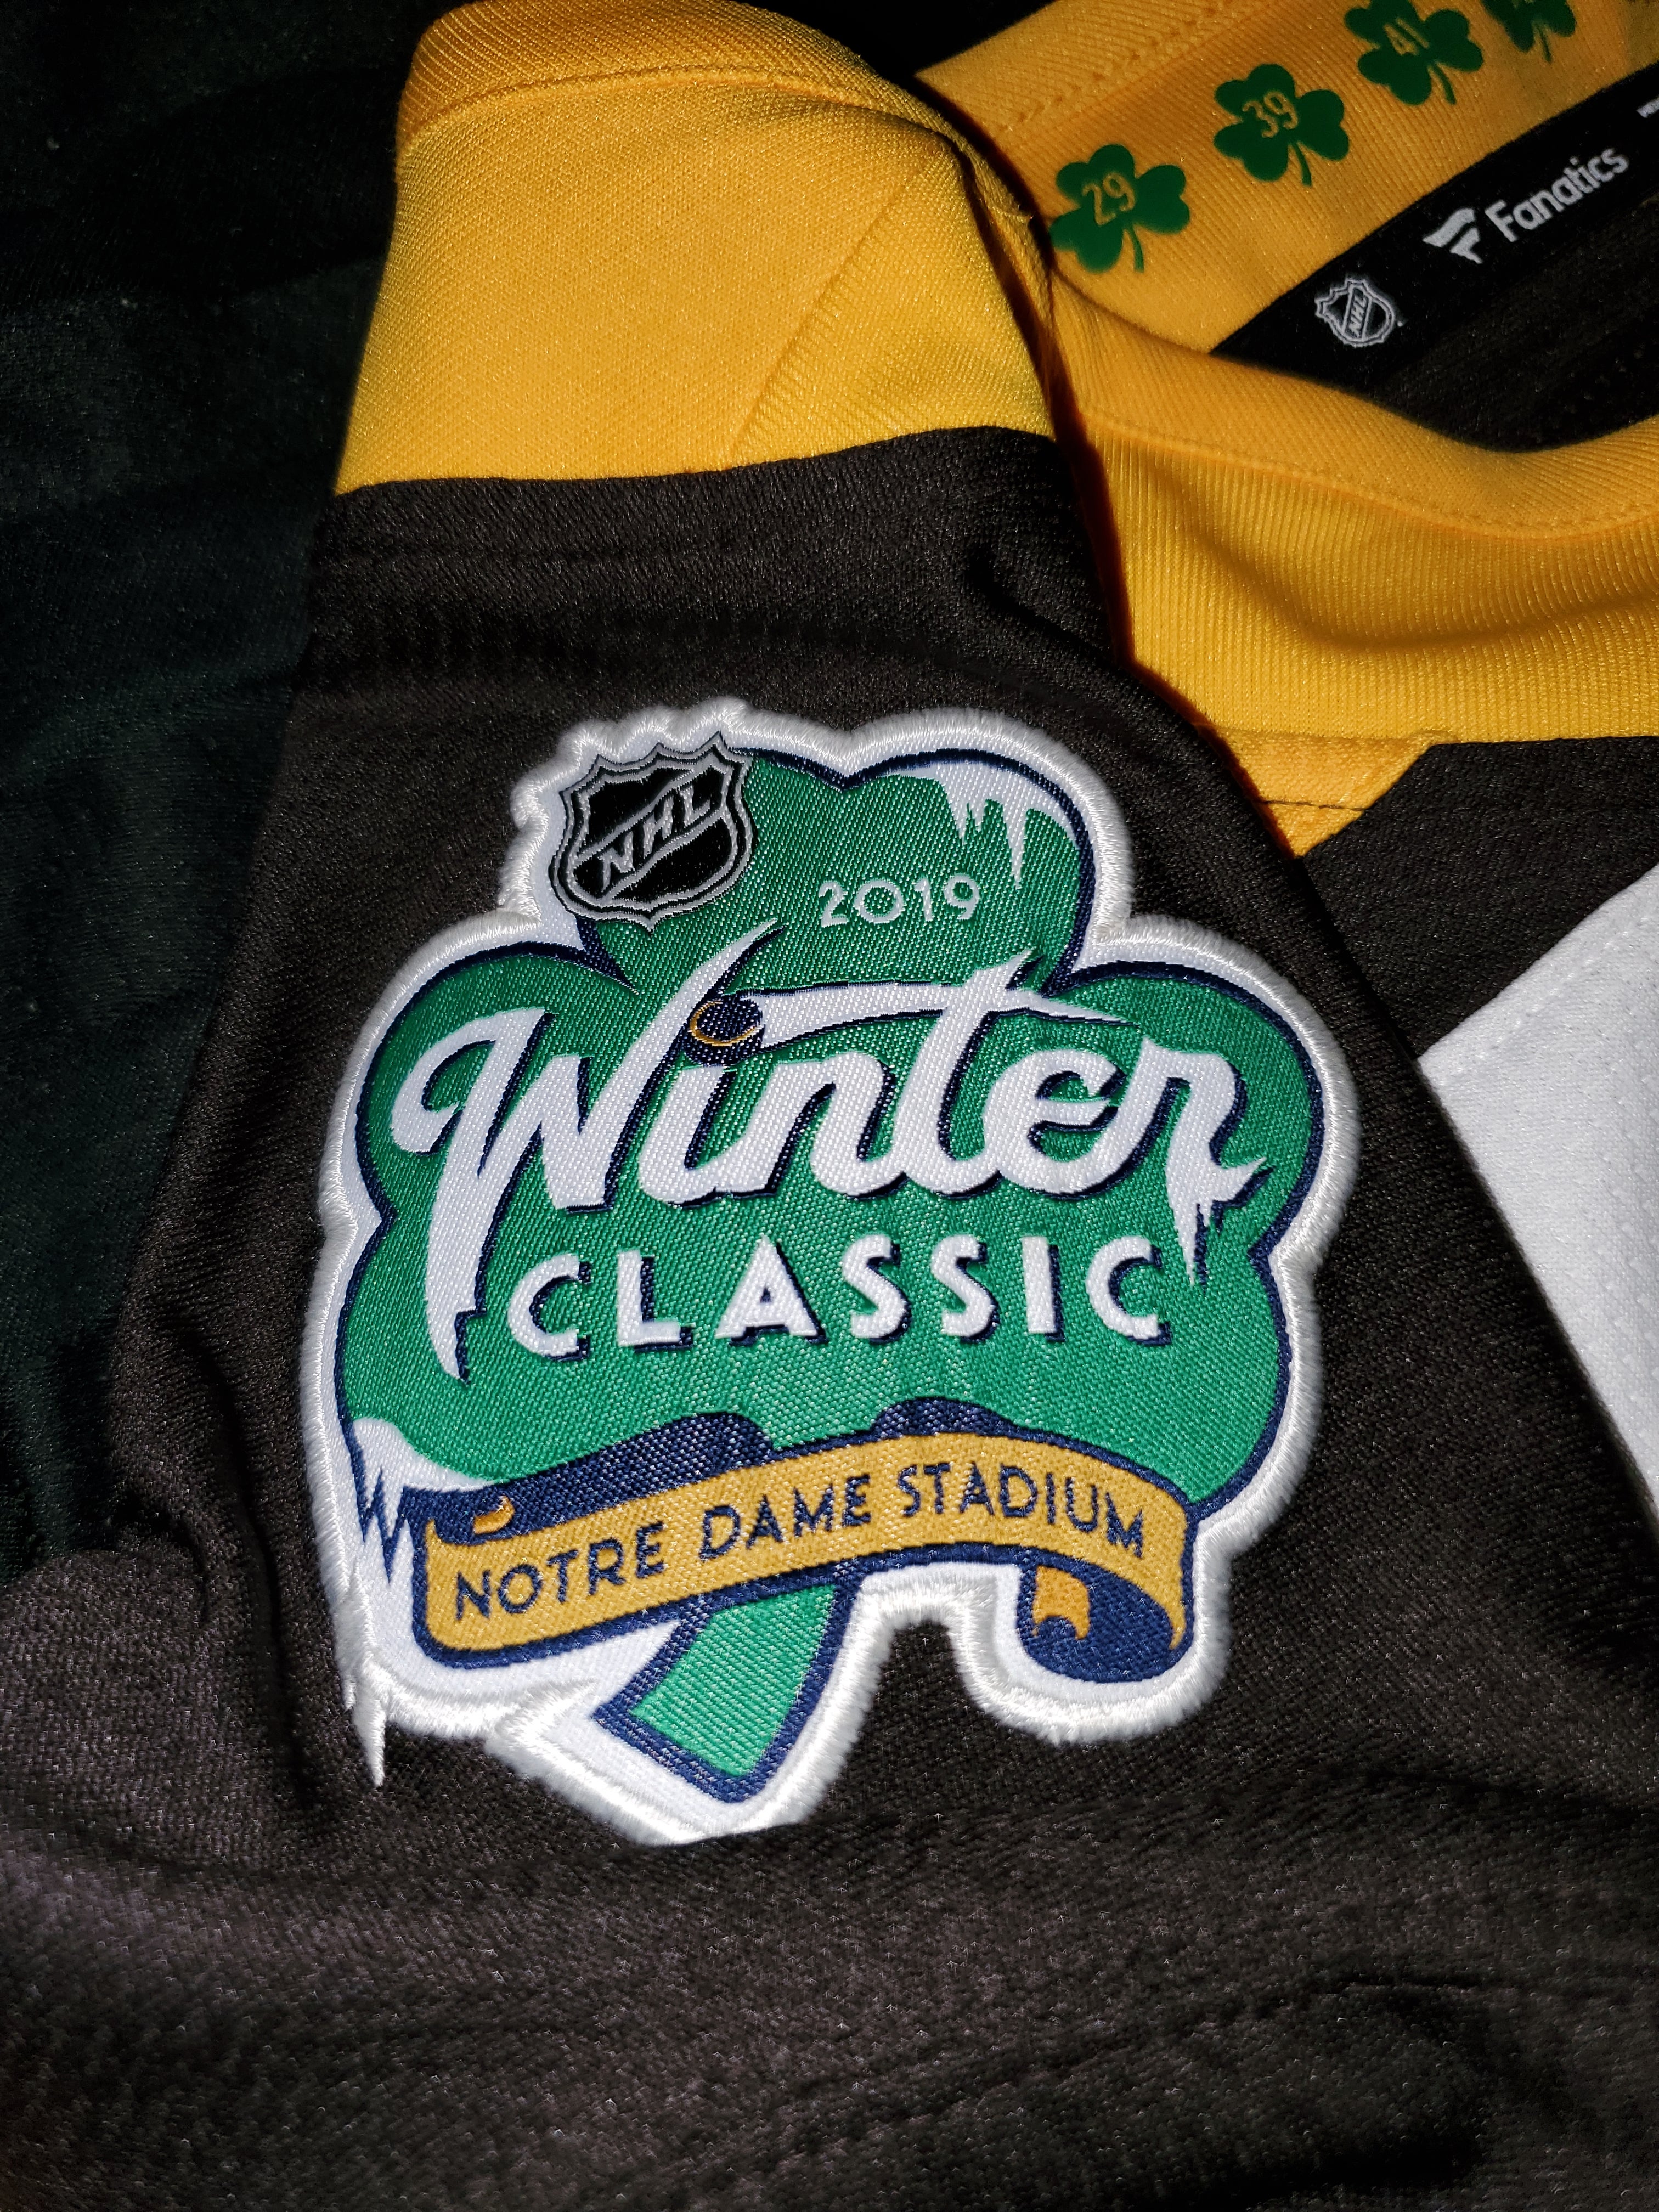 Fanatics Boston Bruins 2019 Winter Classic Replica Jersey